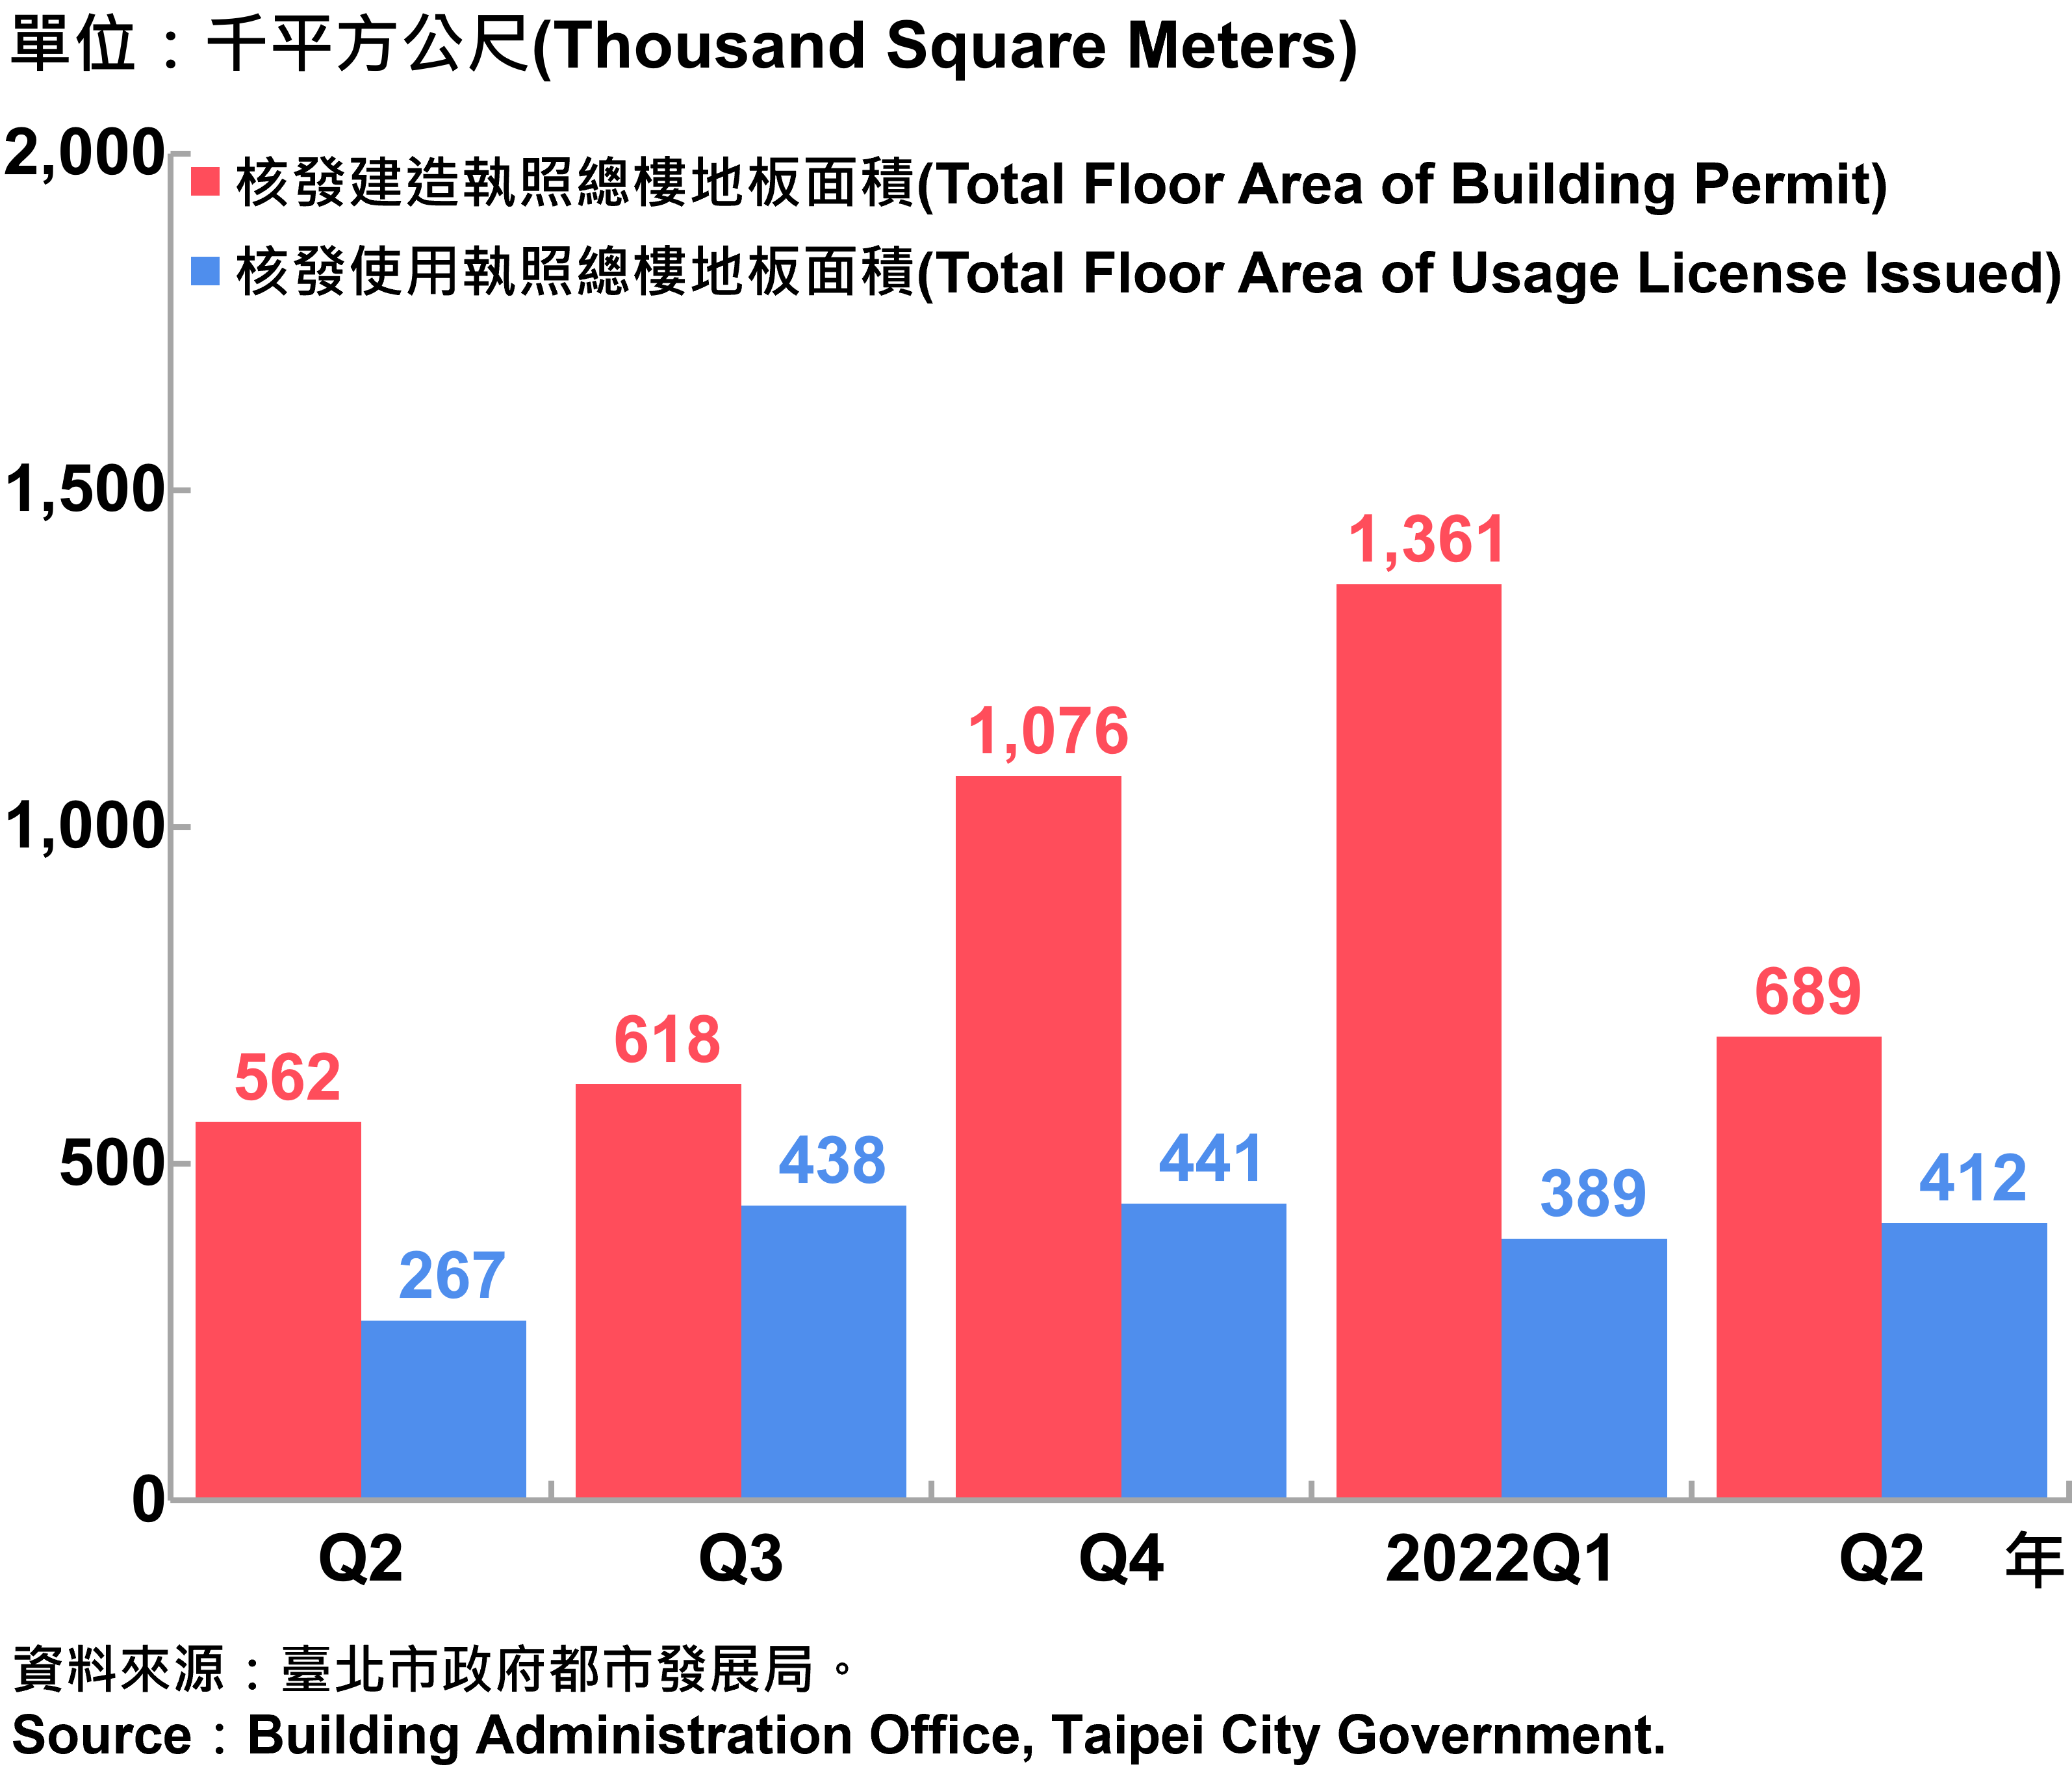 臺北市核發建築物執照與使用執照總樓地板面積—2022Q2 Total Floor Area of Building Permit and Usage License Issued in Taipei City—2022Q2